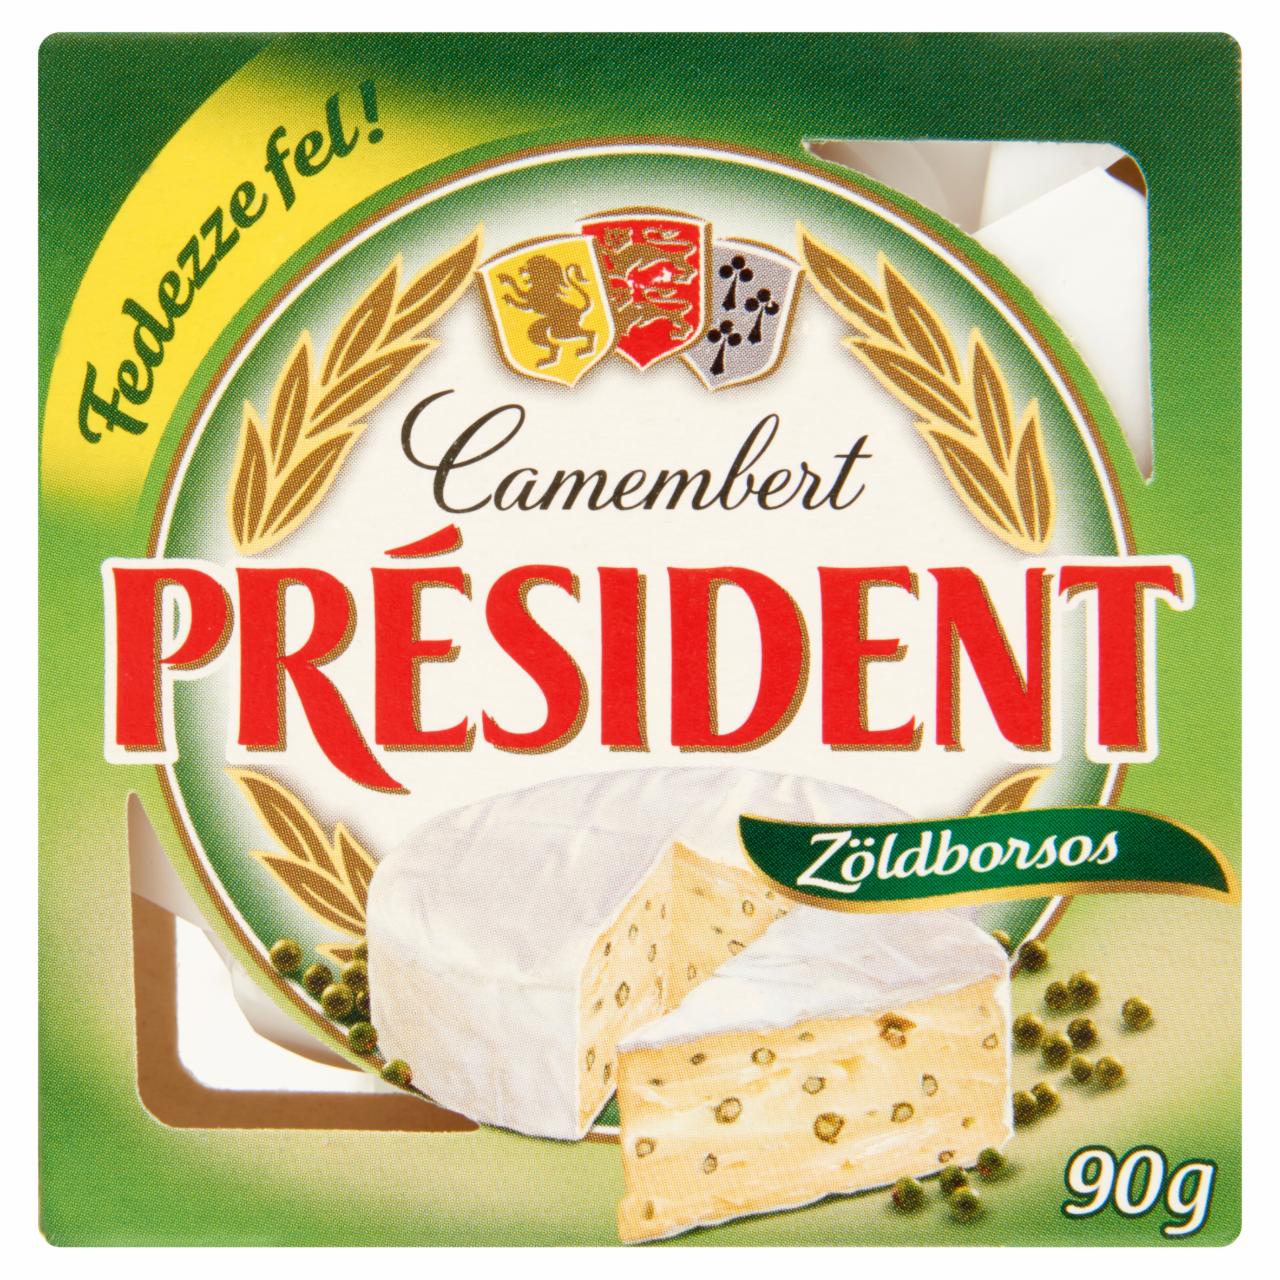 Képek - Président zöldborsos camembert sajt 90 g